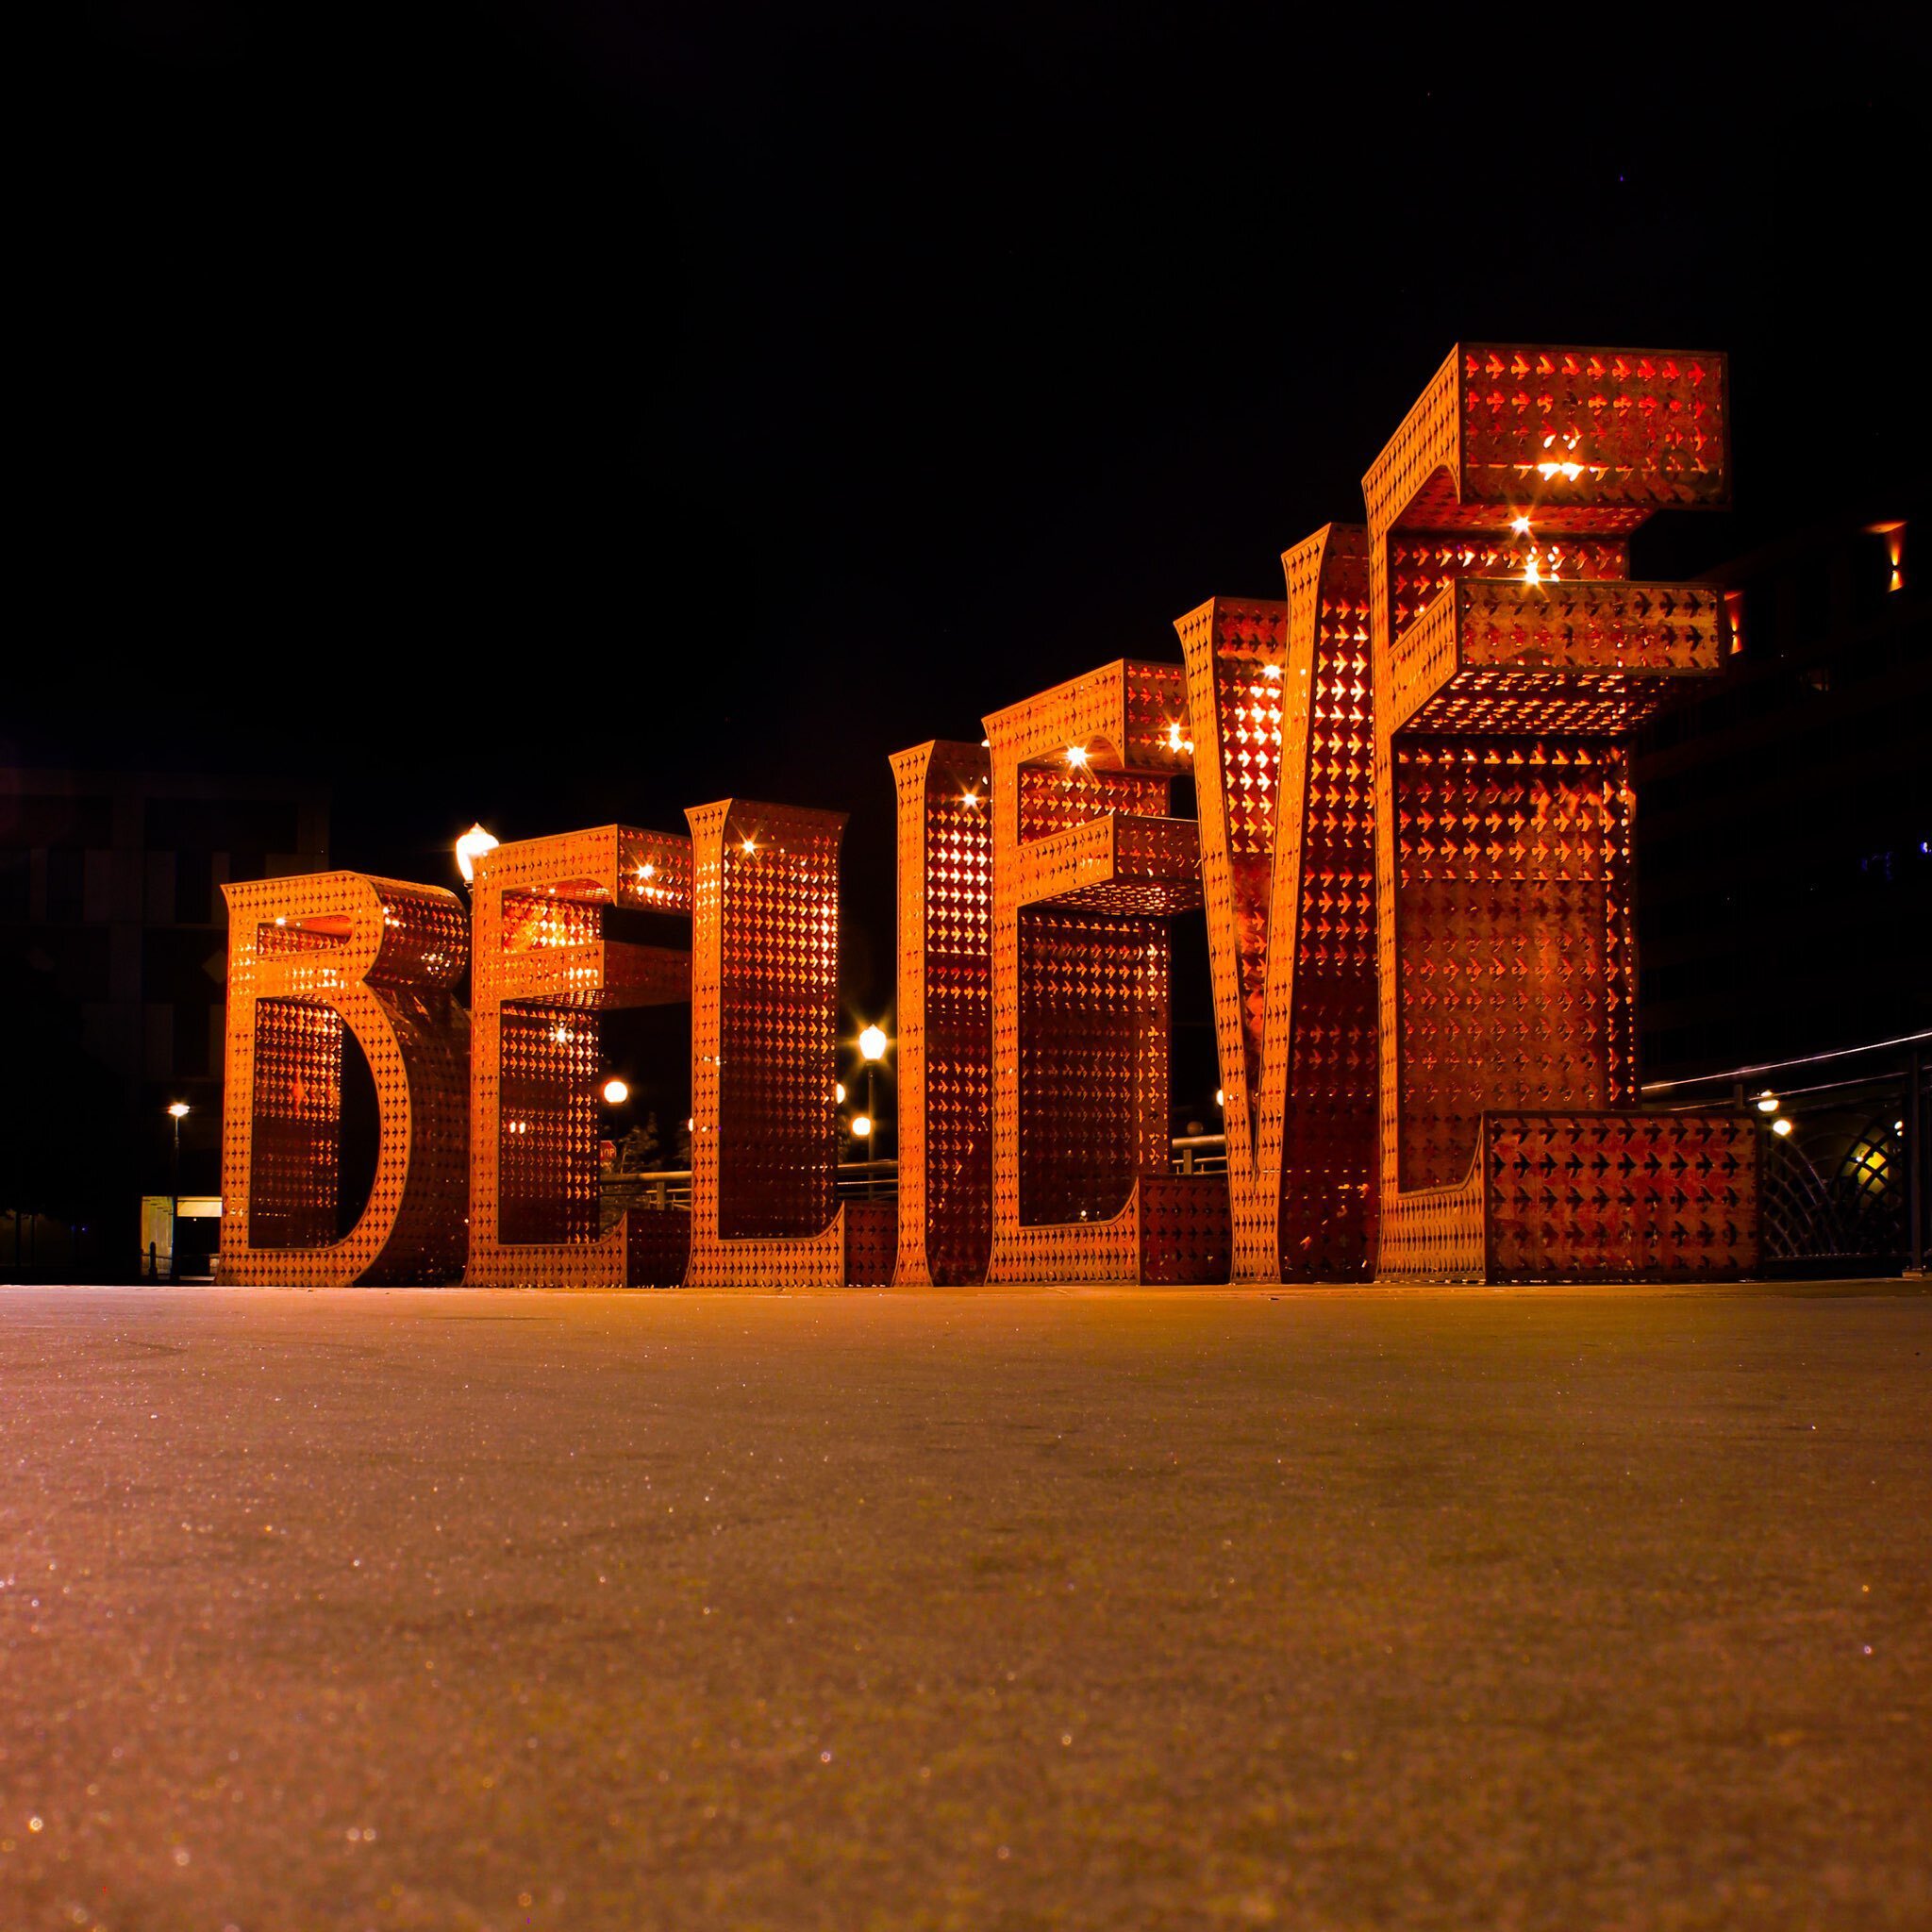 The orange "BELIEVE" sign in Reno, NV